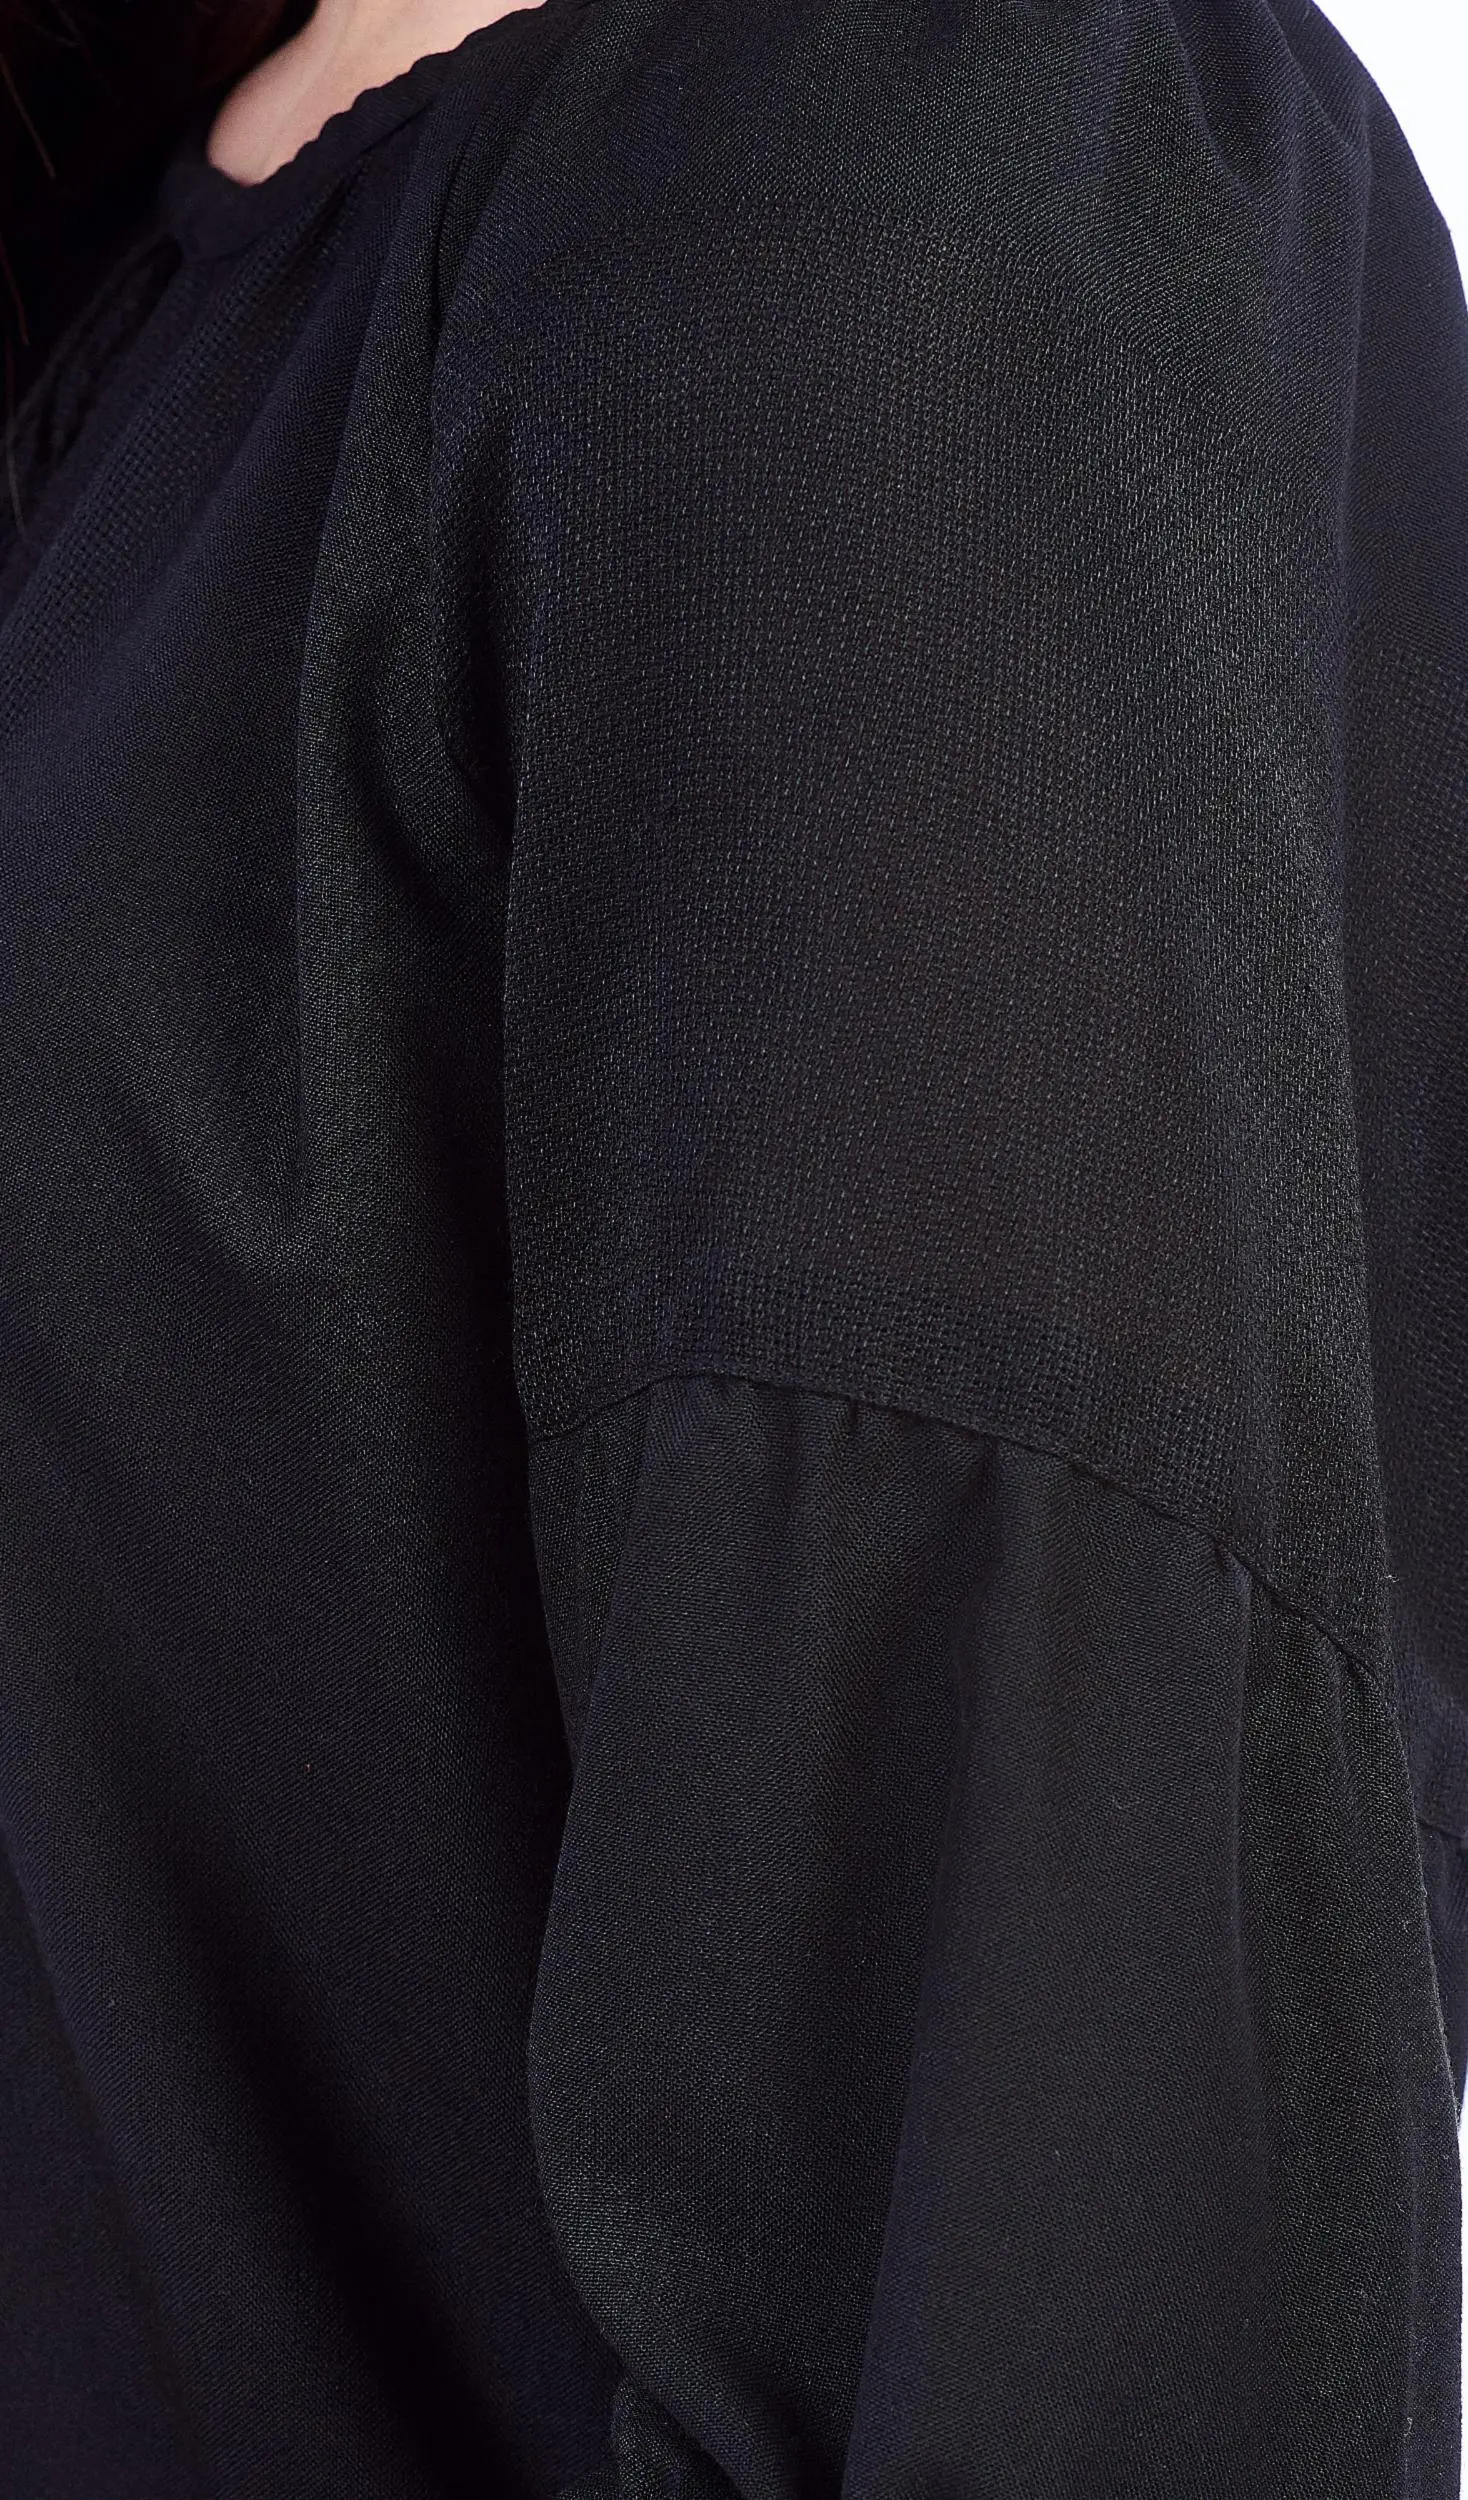 ТПК-172 03-02/09 Сорочка жіноча під вишивку, чорна, 3/4 рукав, розмір 44